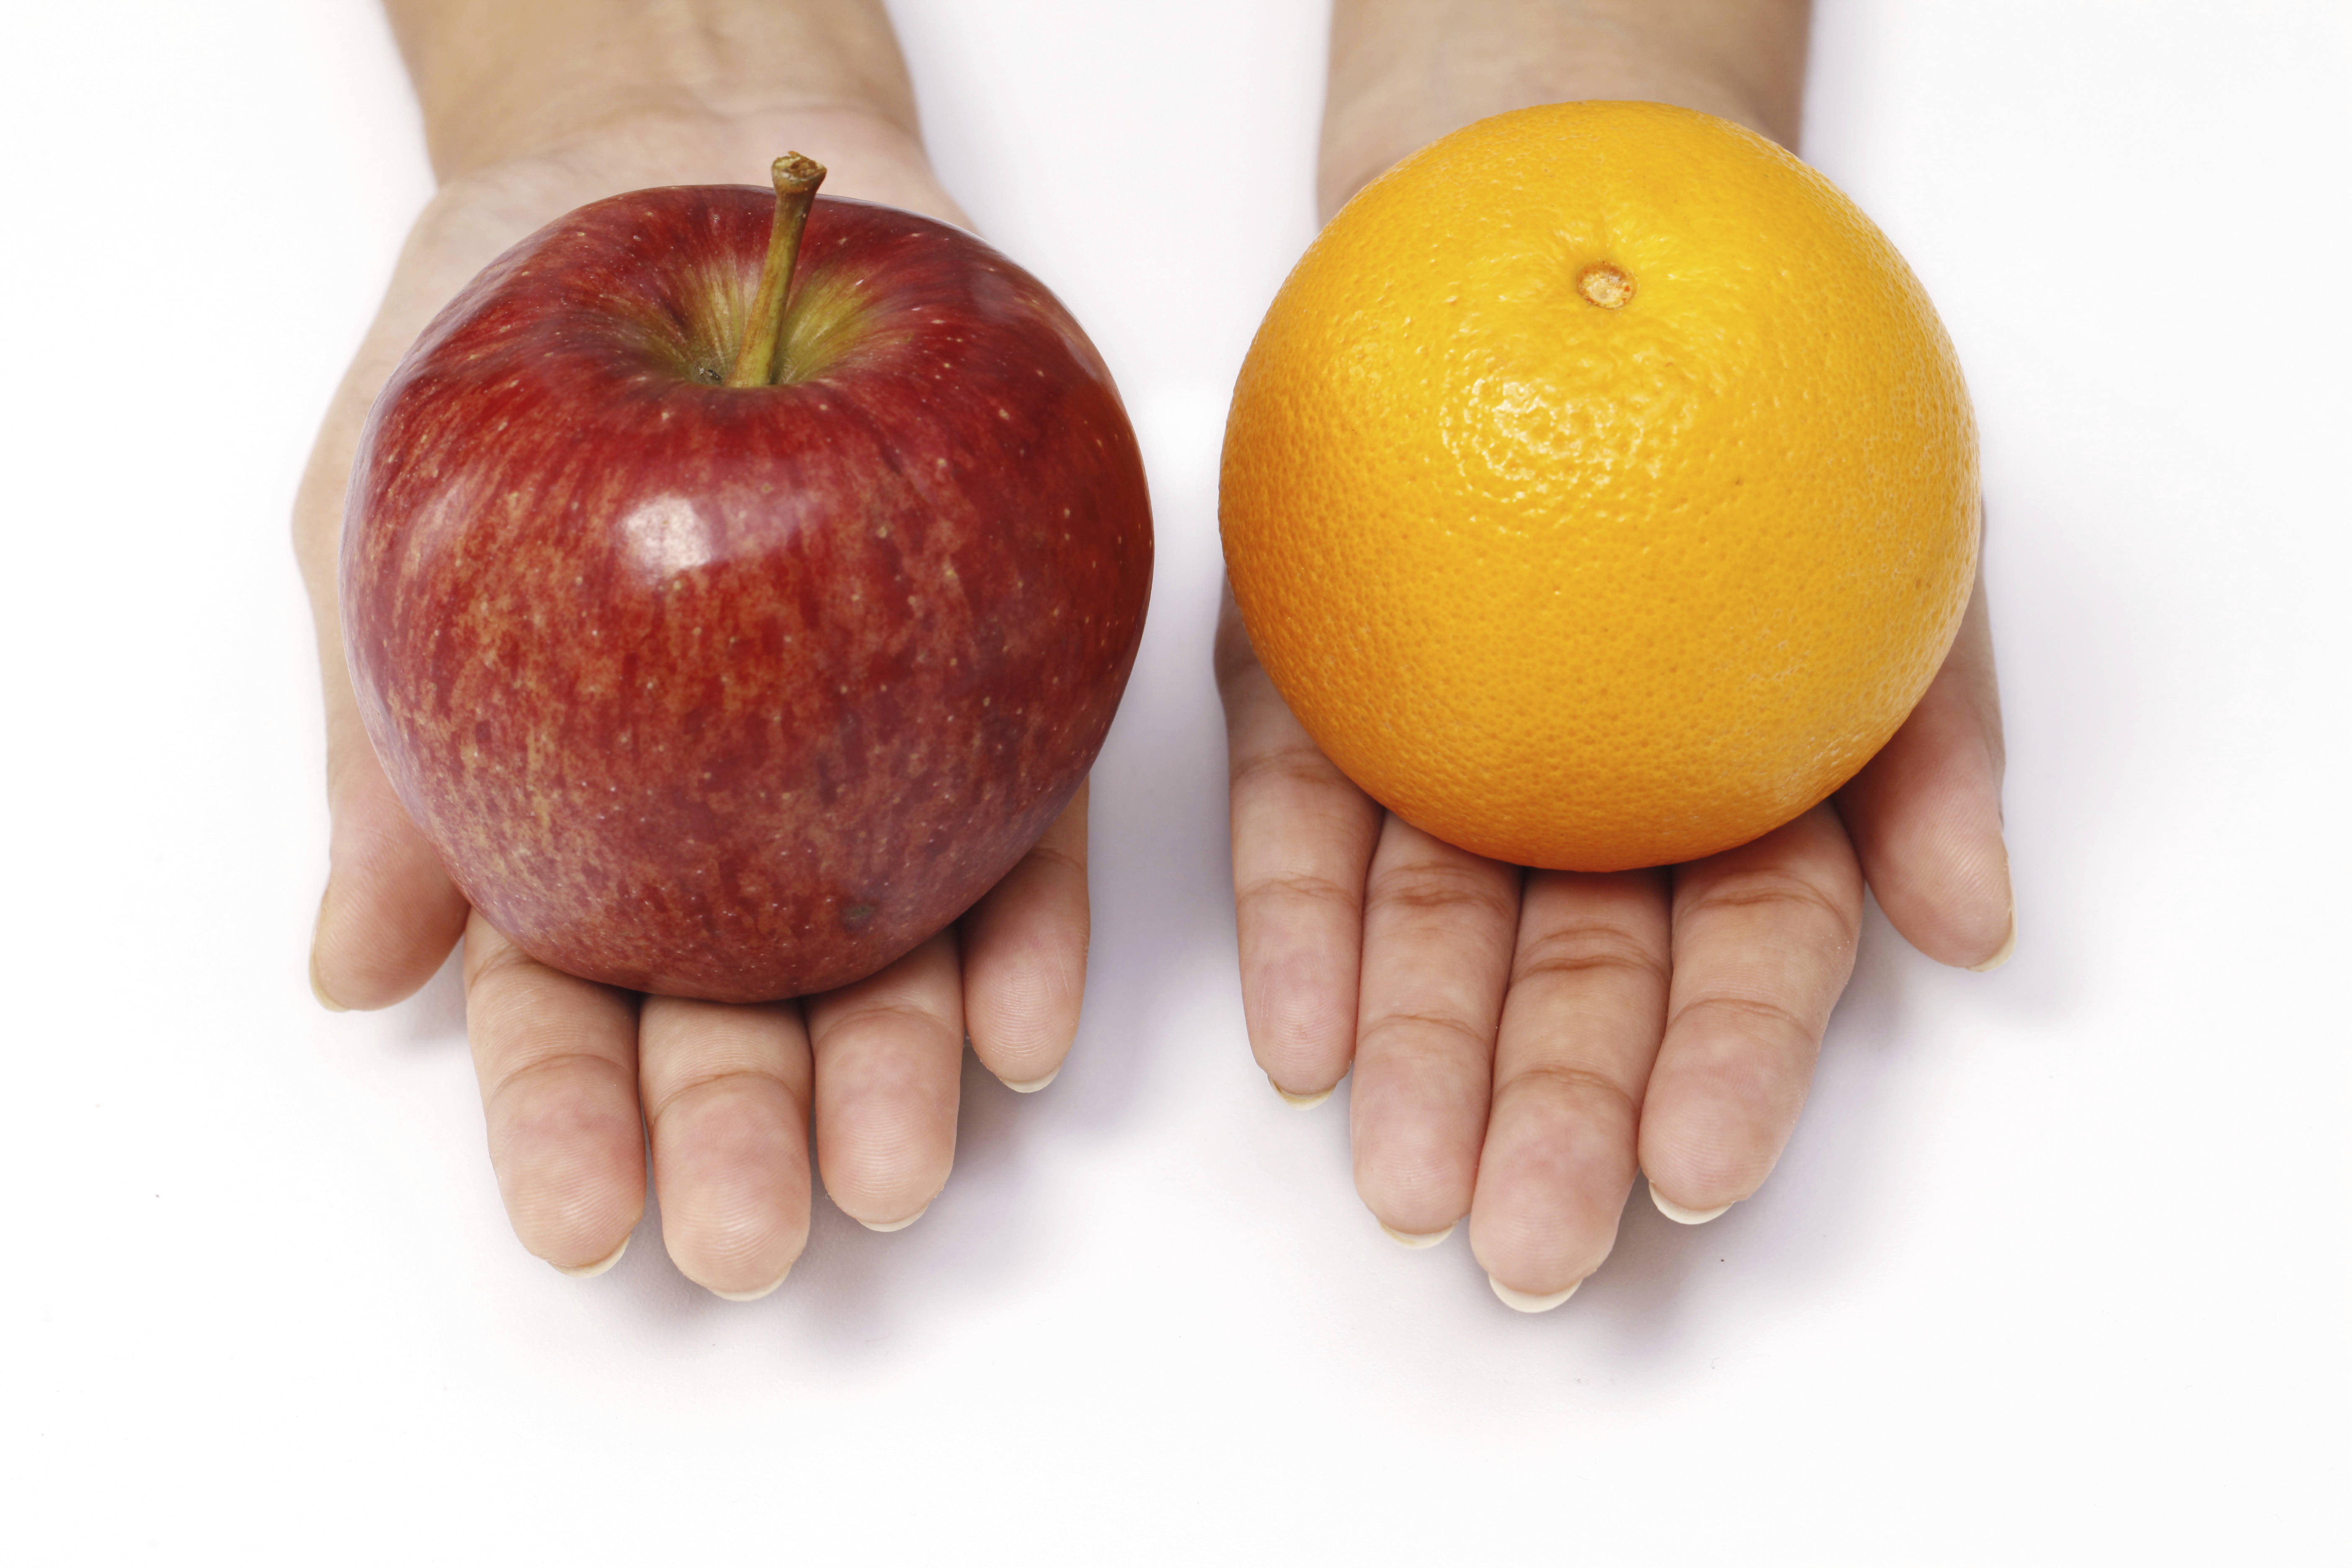 Apple compare. Яблоко и апельсин. Яблоко в руке. Одно яблоко. Яблоко и апельсин в руках.